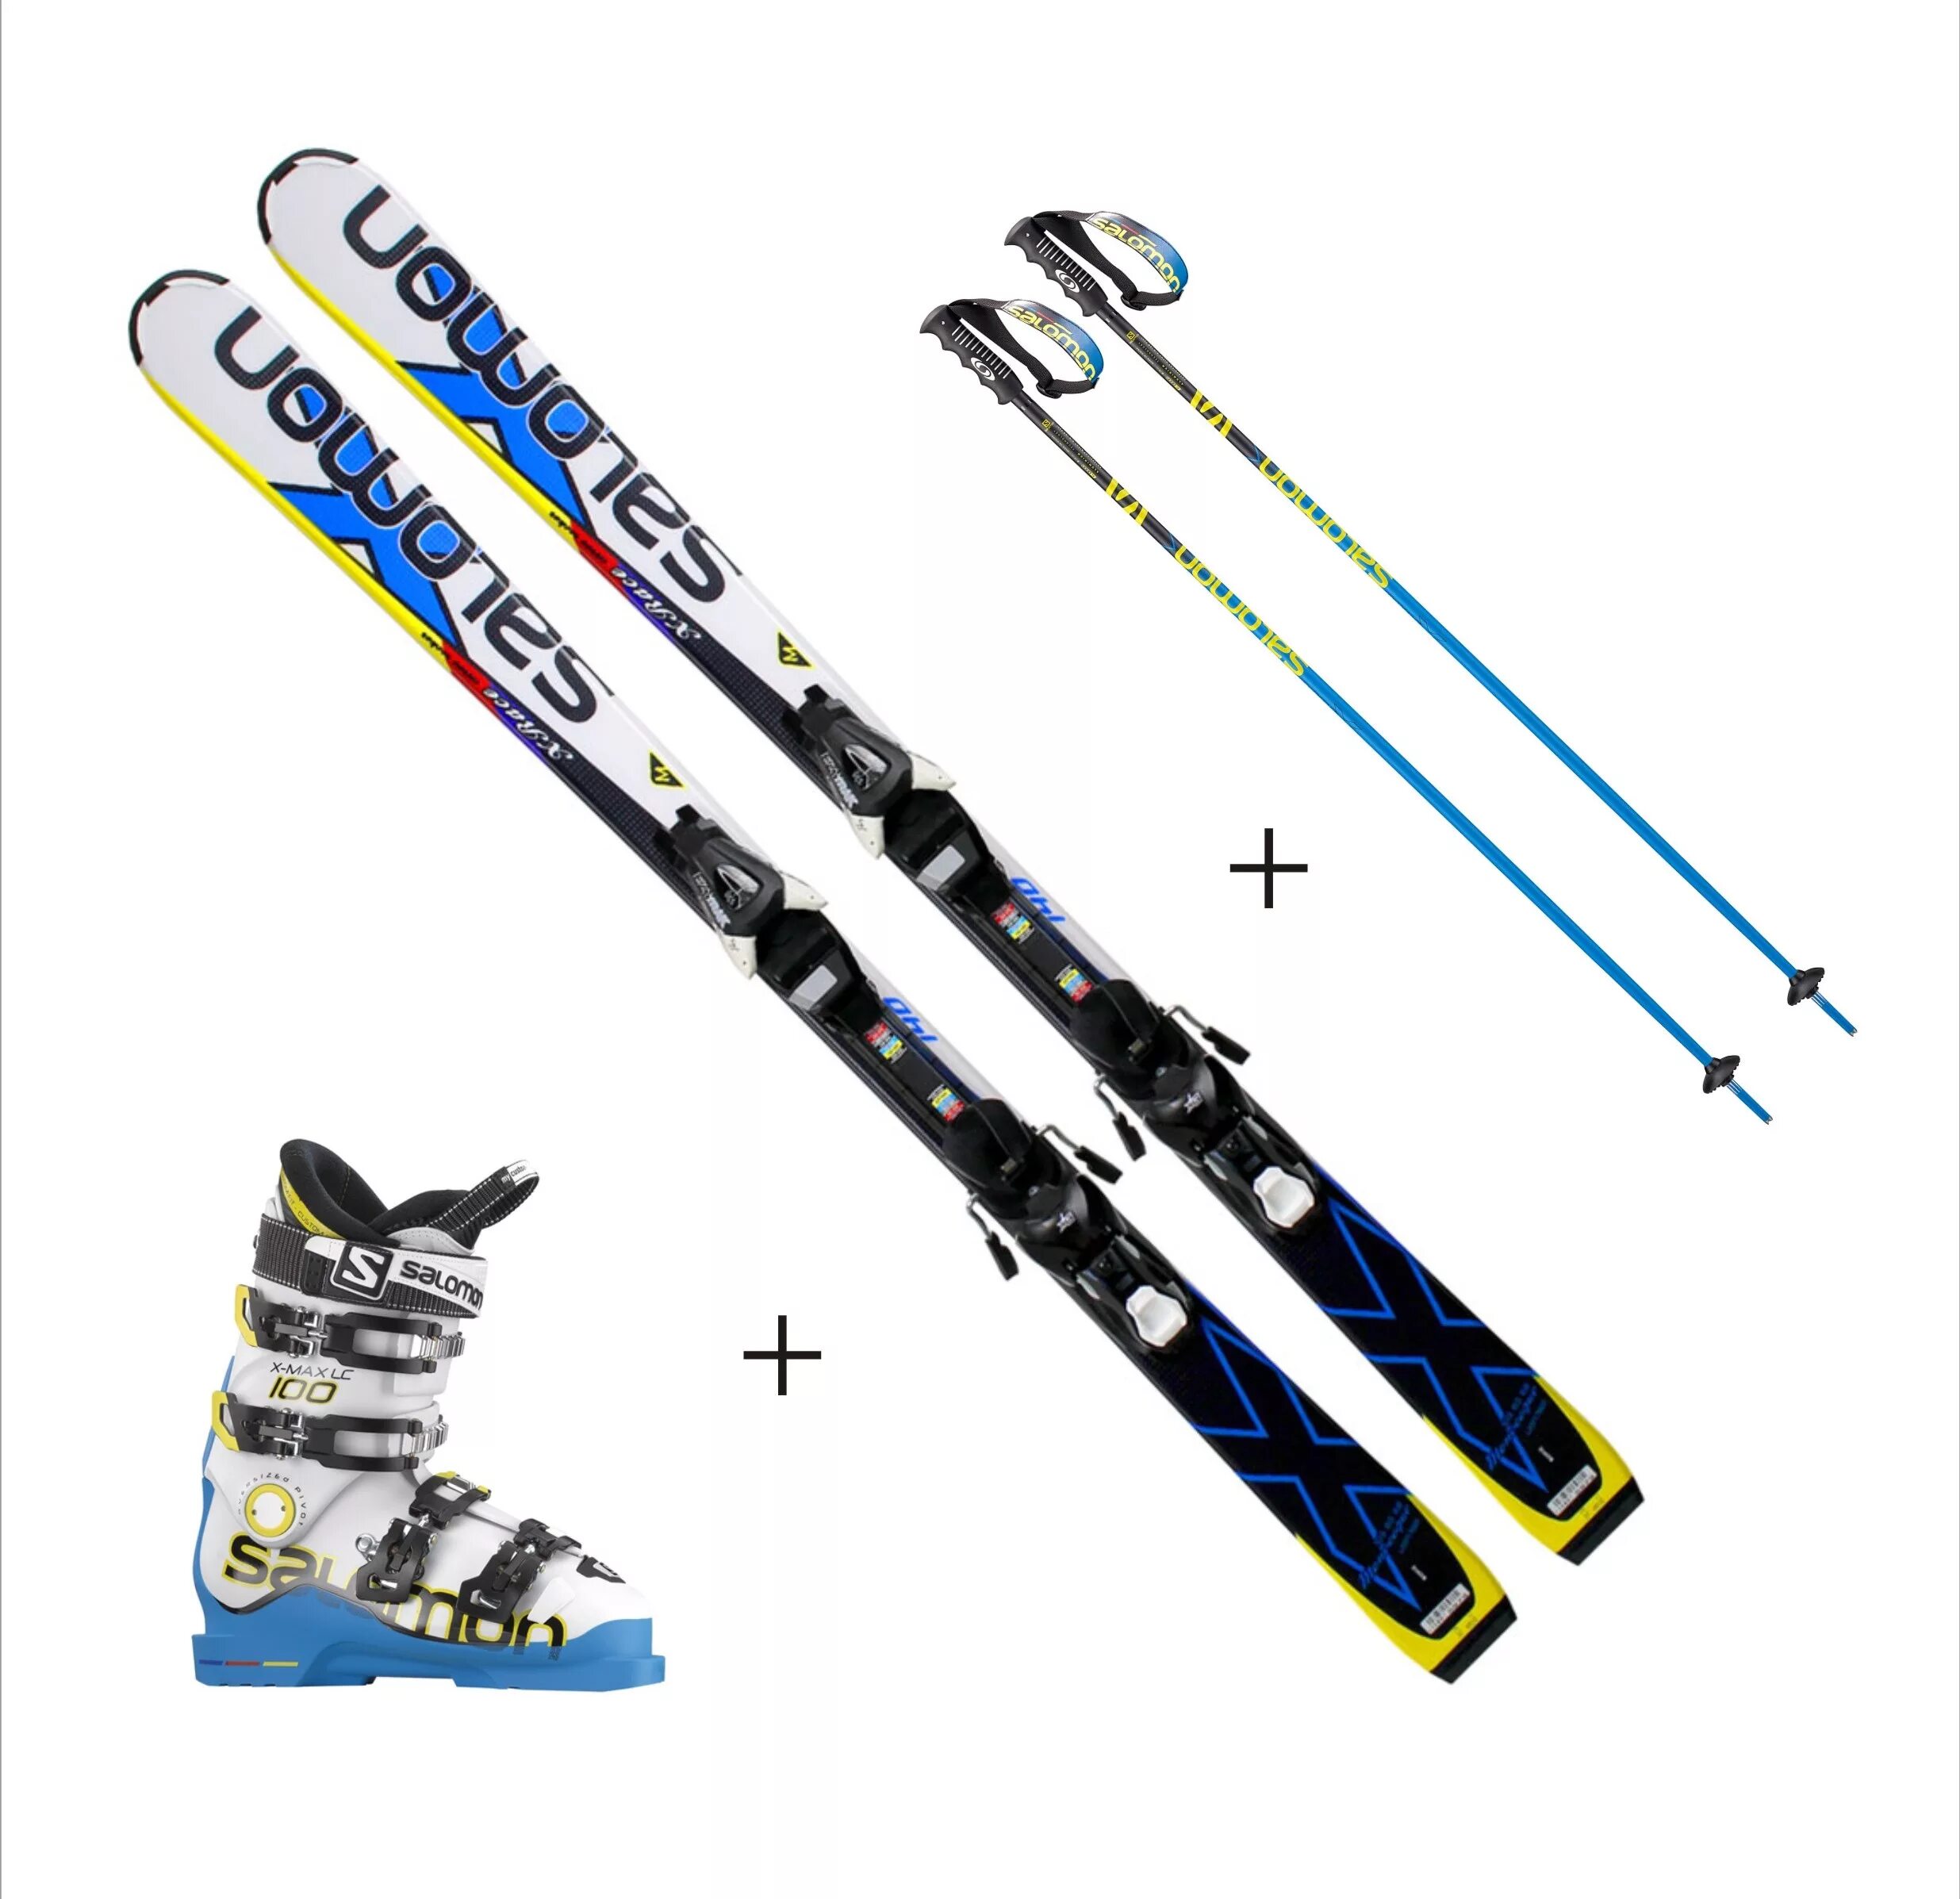 Сноуборды лыжи и палки перевозятся. Спортивные лыжи Фишер горные лыжи. Горные лыжи спортцех 165 SL Nordica. Горные лыжи Hart f17. Горные лыжи XT 200.